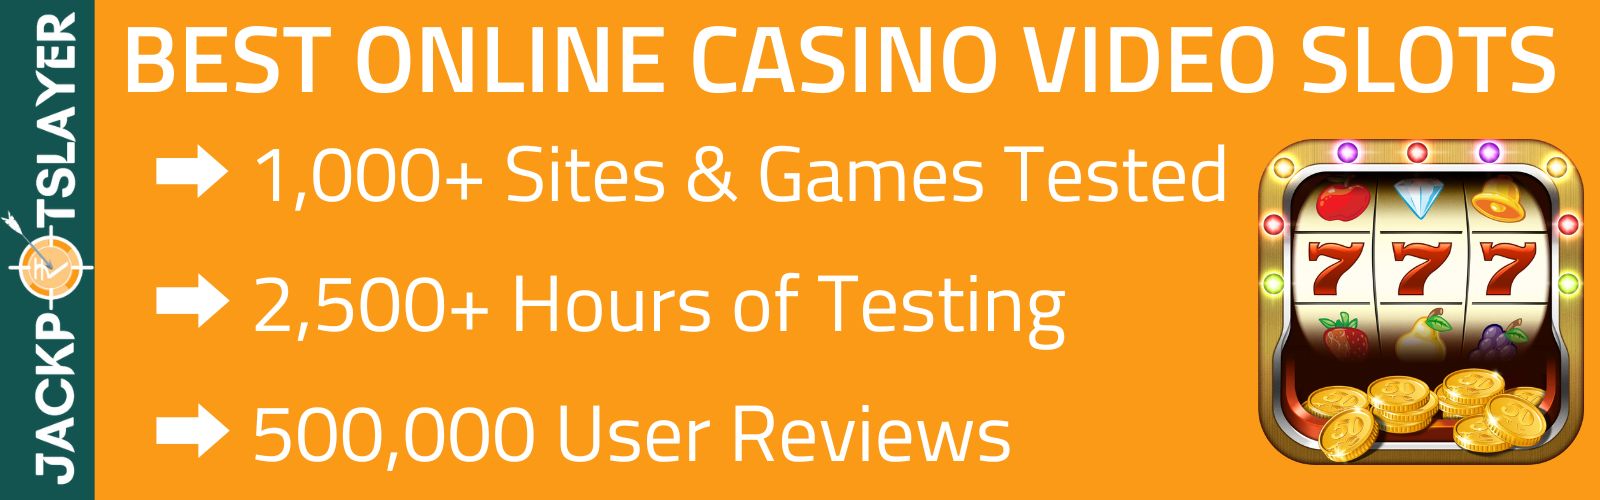 Best Online Video Slots Casino